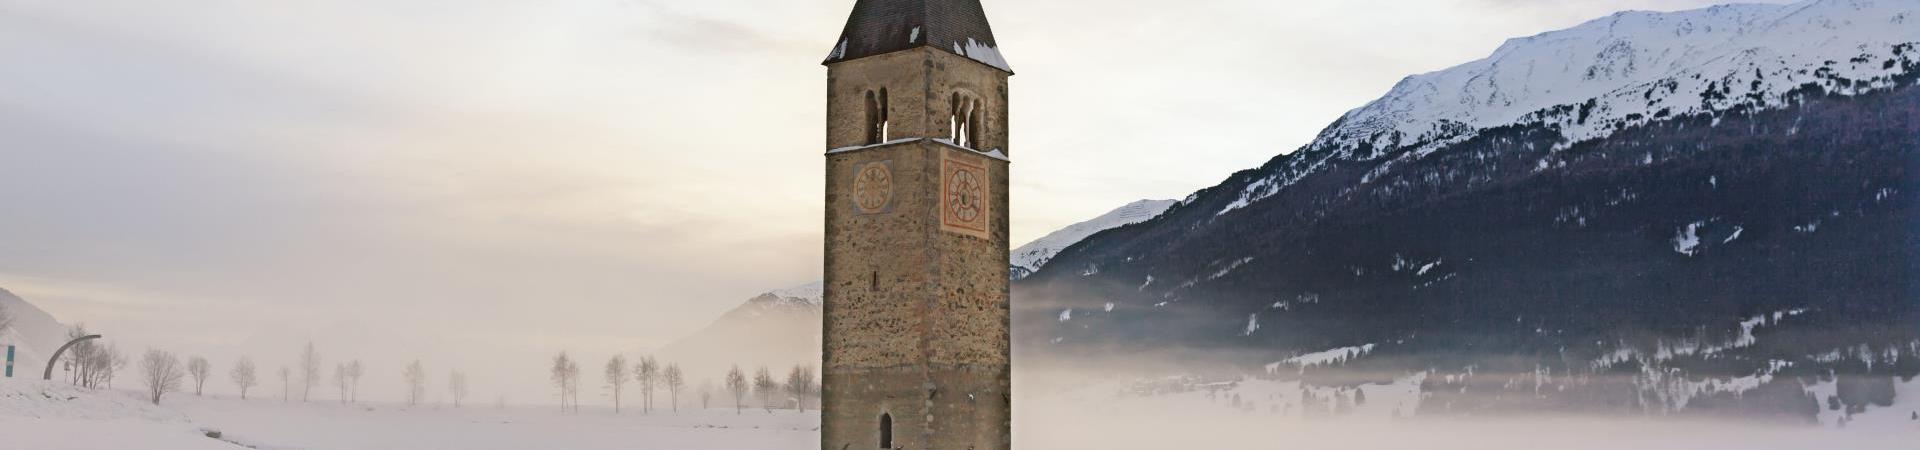 landschaft-reschensee-turm-winter-vinschgau-fb